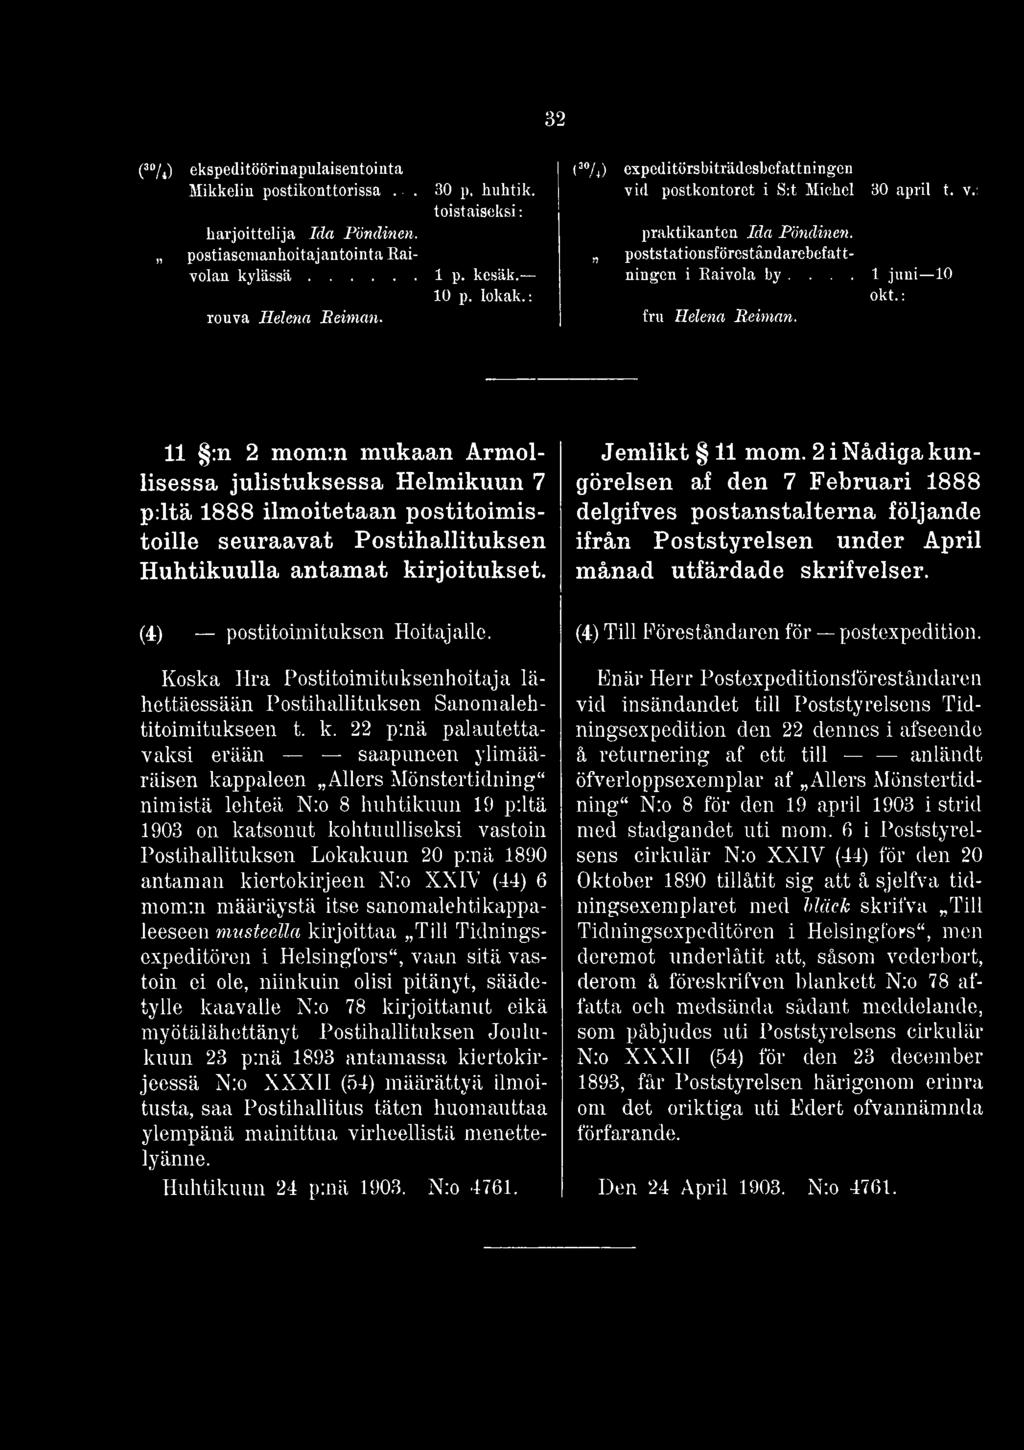 22 p:nä palautettavaksi erään saapuneen ylimääräisen kappaleen AUers Mönstertidning" nimistä lehteä N:o 8 huhtikuun 19 piitä 1903 on katsonut kohtuulliseksi vastoin Postihallituksen Lokakuun 20 p:nä